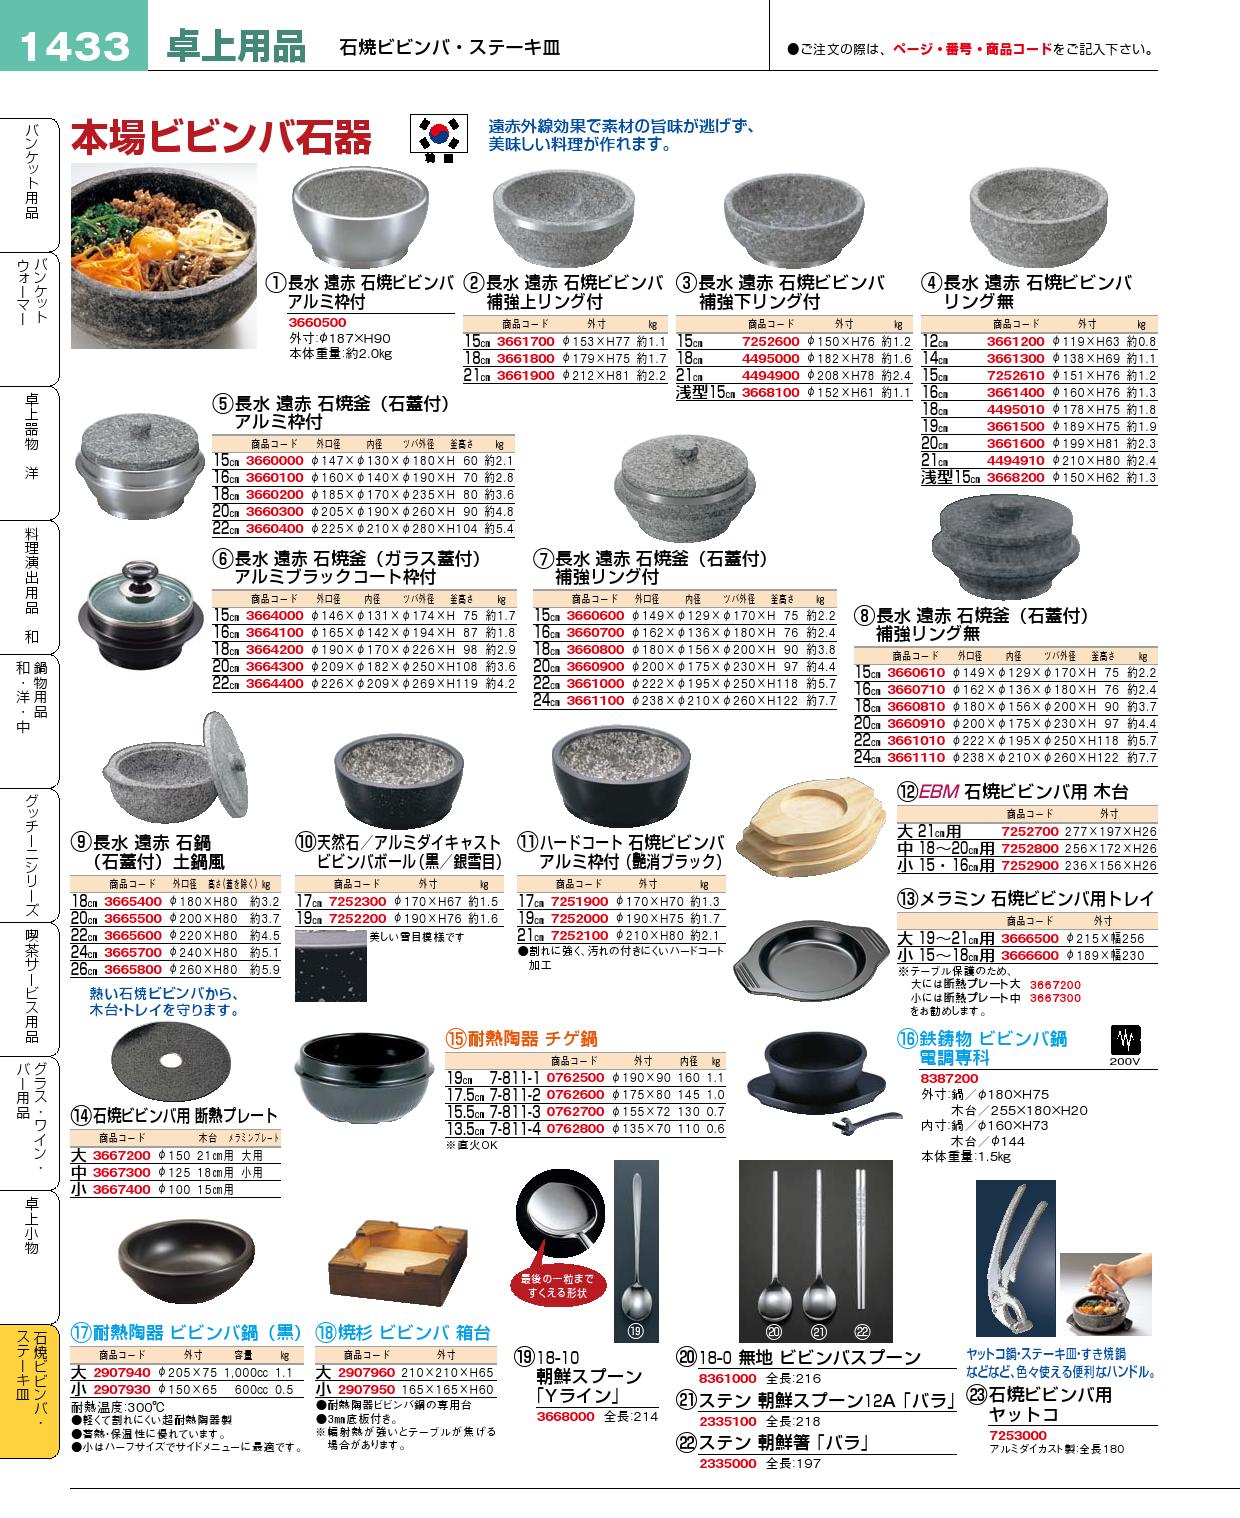 石焼ビビンバ鍋 2個セット 16cm 超耐熱陶器 日本製 スプーンヤットコ付